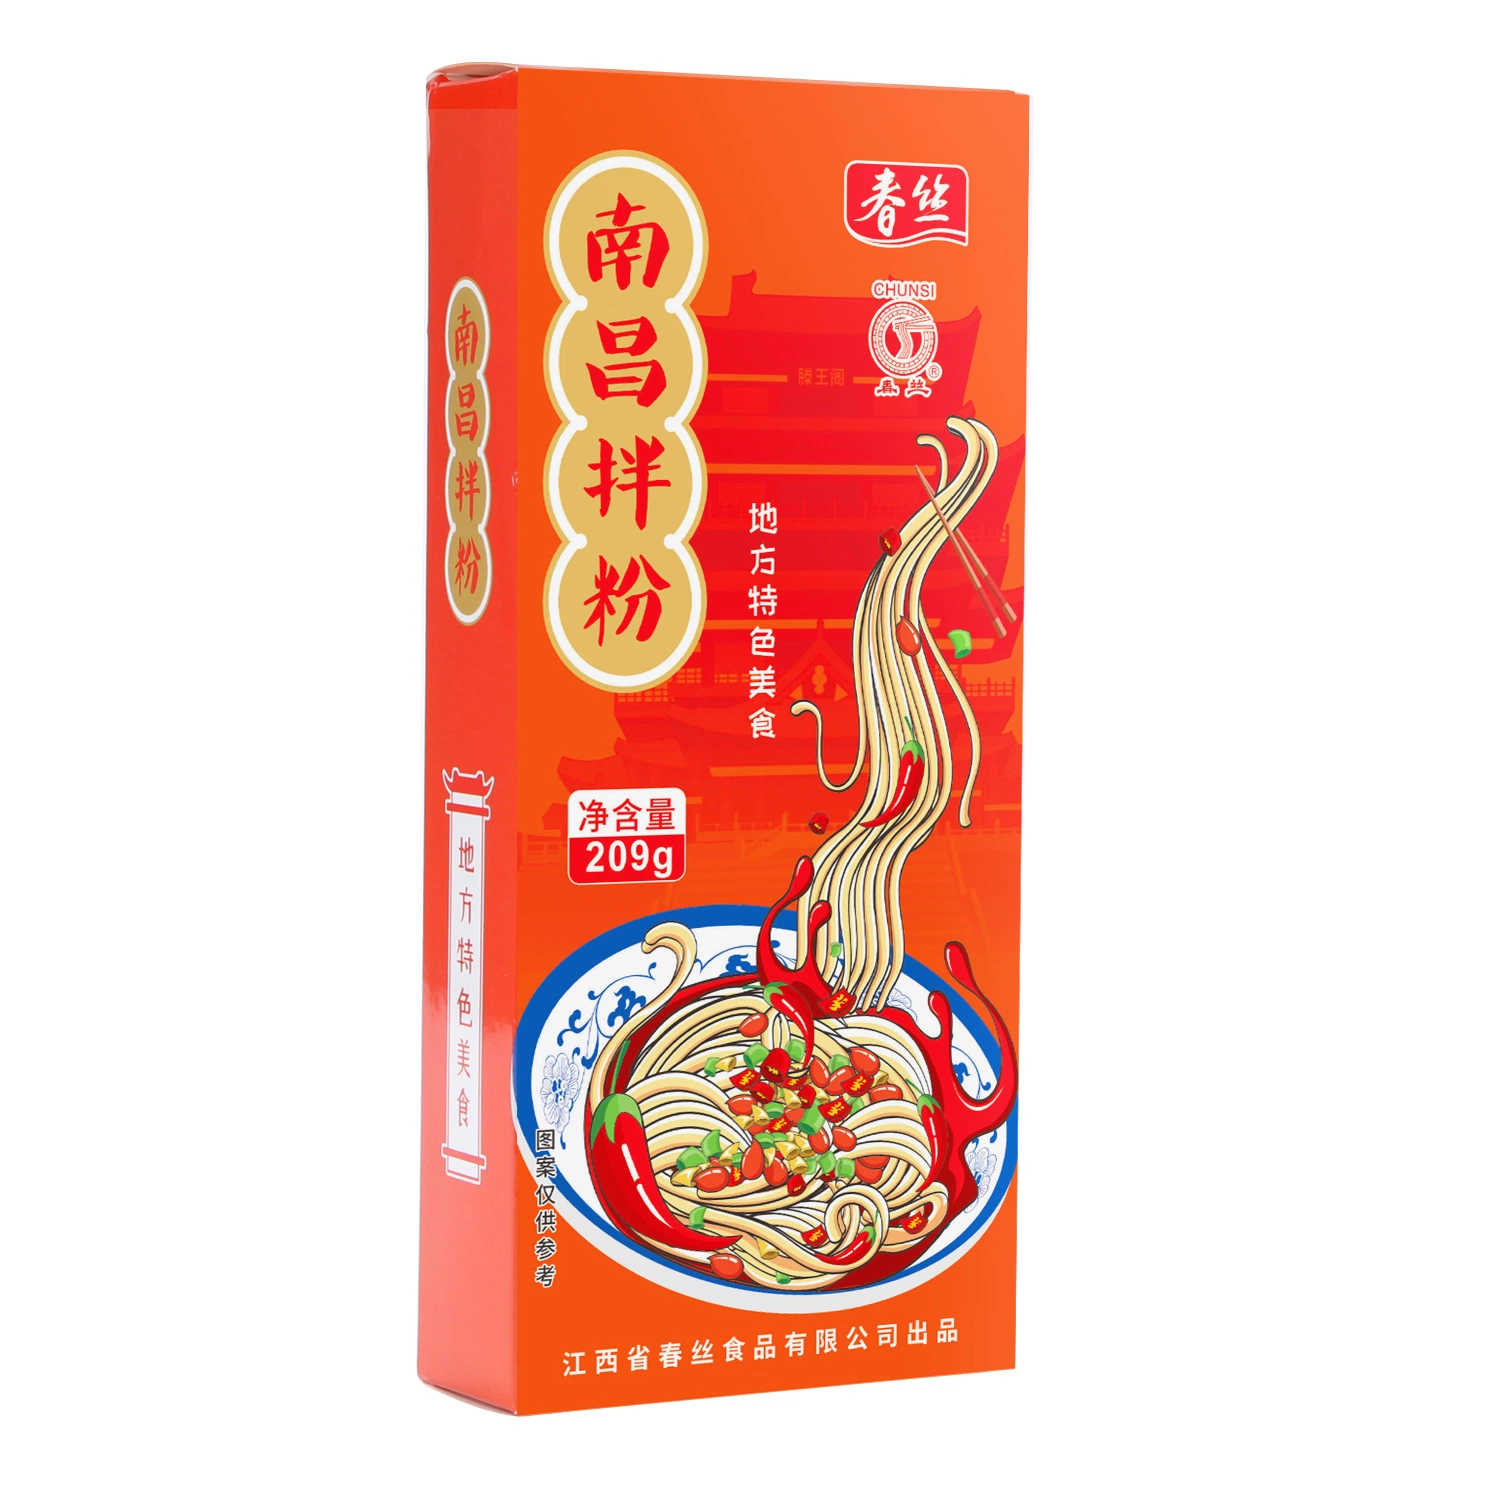 Chunsi Nanchang Instant Food Spicy local délices de la région farine de riz mélangée Vente à chaud vermicelli